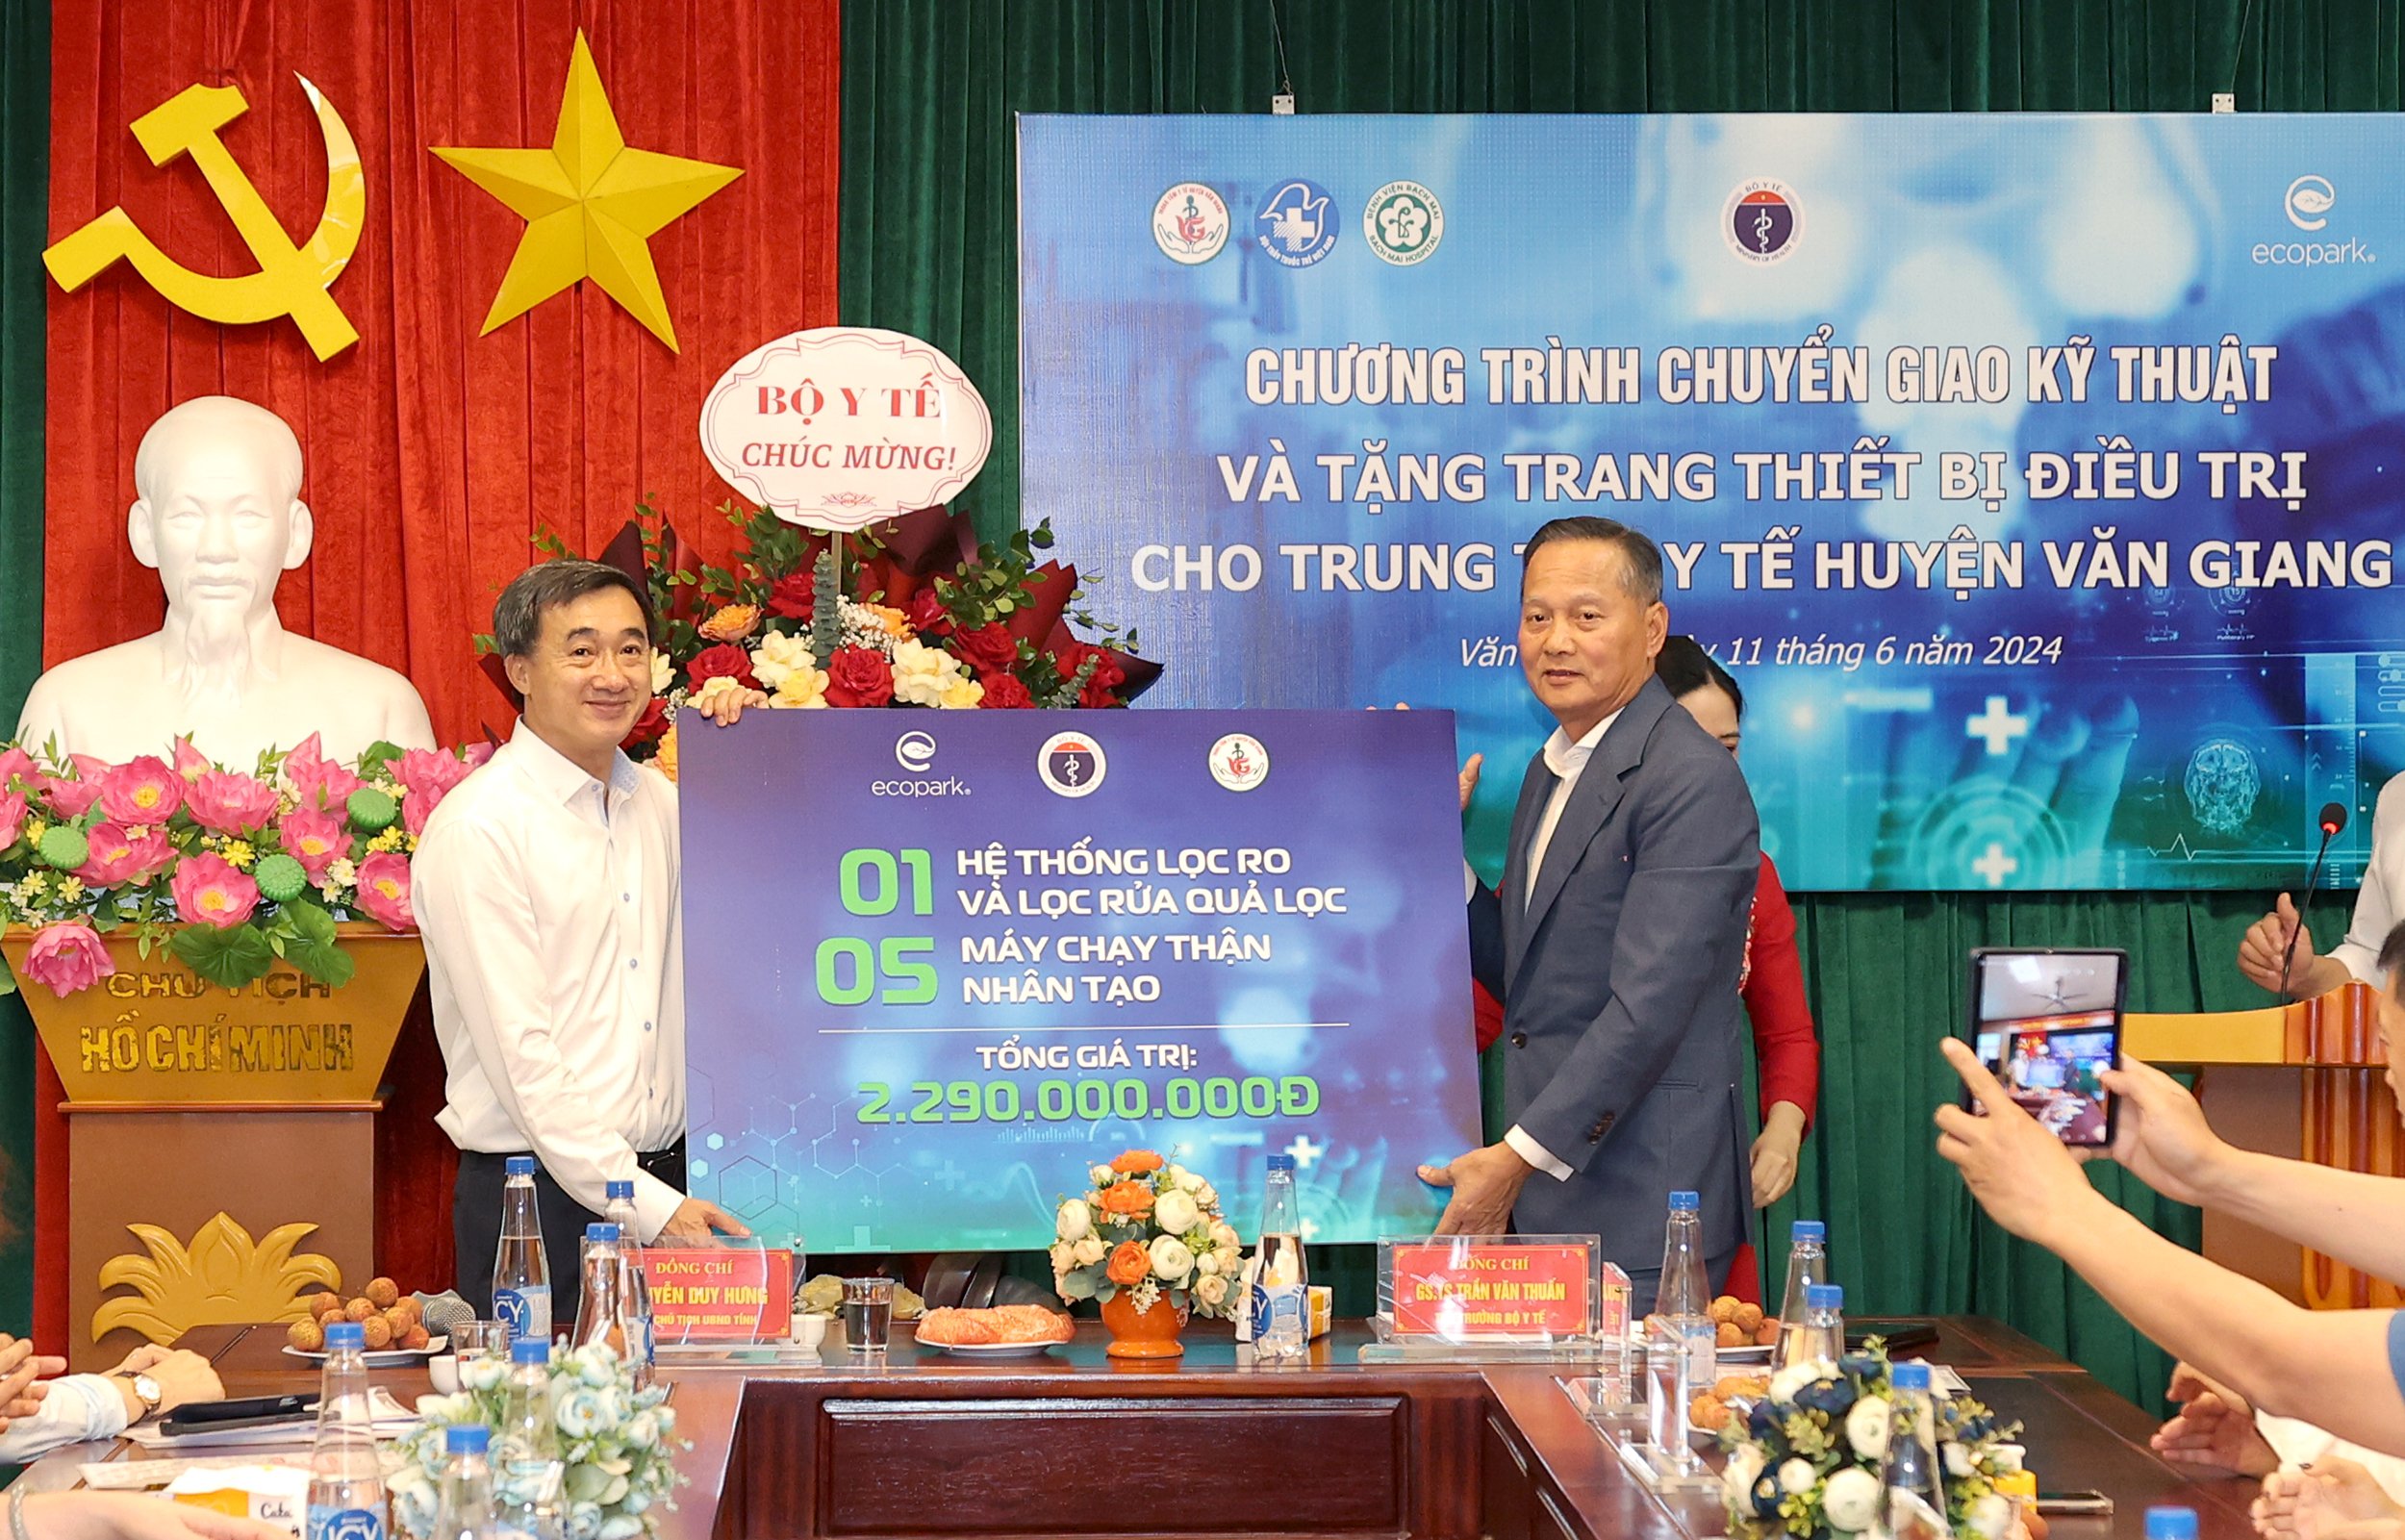 Chuyển giao kỹ thuật và tặng thiết bị y tế trị giá hơn 2,2 tỷ đồng cho TTYT huyện Văn Giang, Hưng Yên- Ảnh 2.